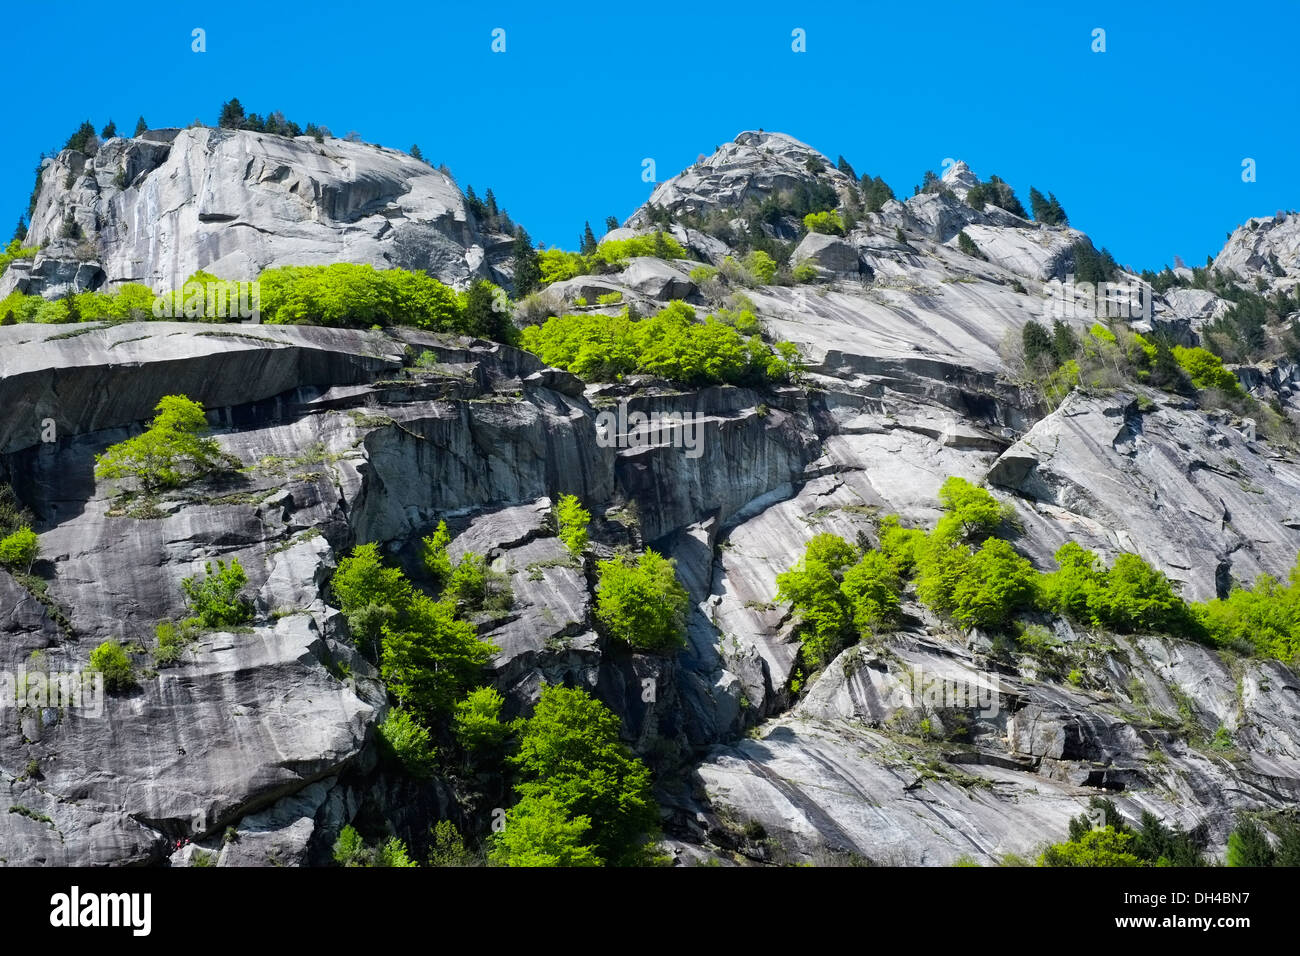 Granite mountains in Val di Mello, Val Masino, Italy Stock Photo